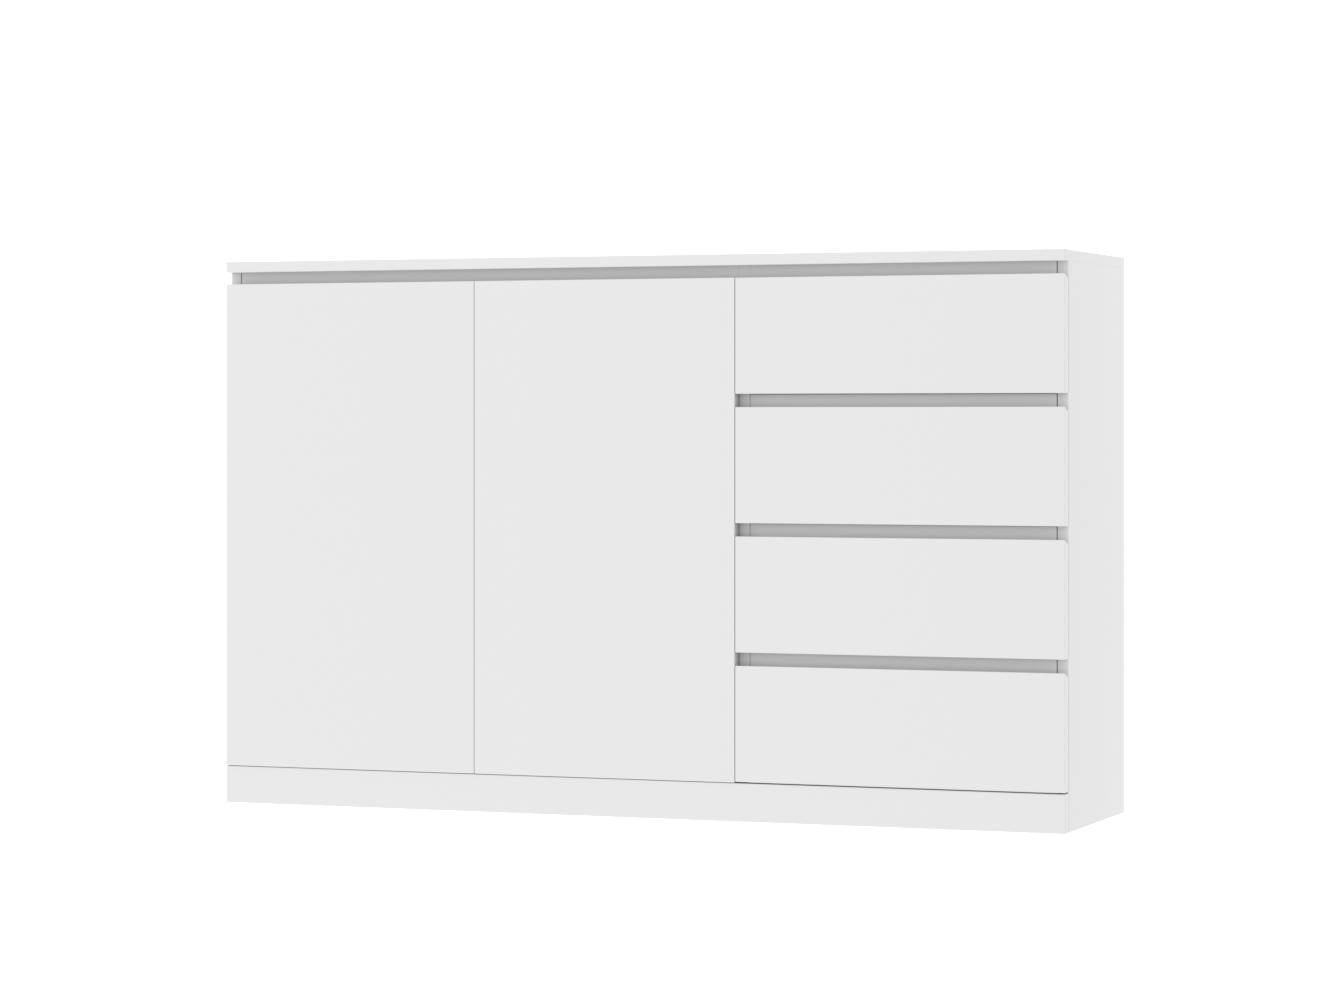 Комод Мальм 18 white ИКЕА (IKEA) изображение товара